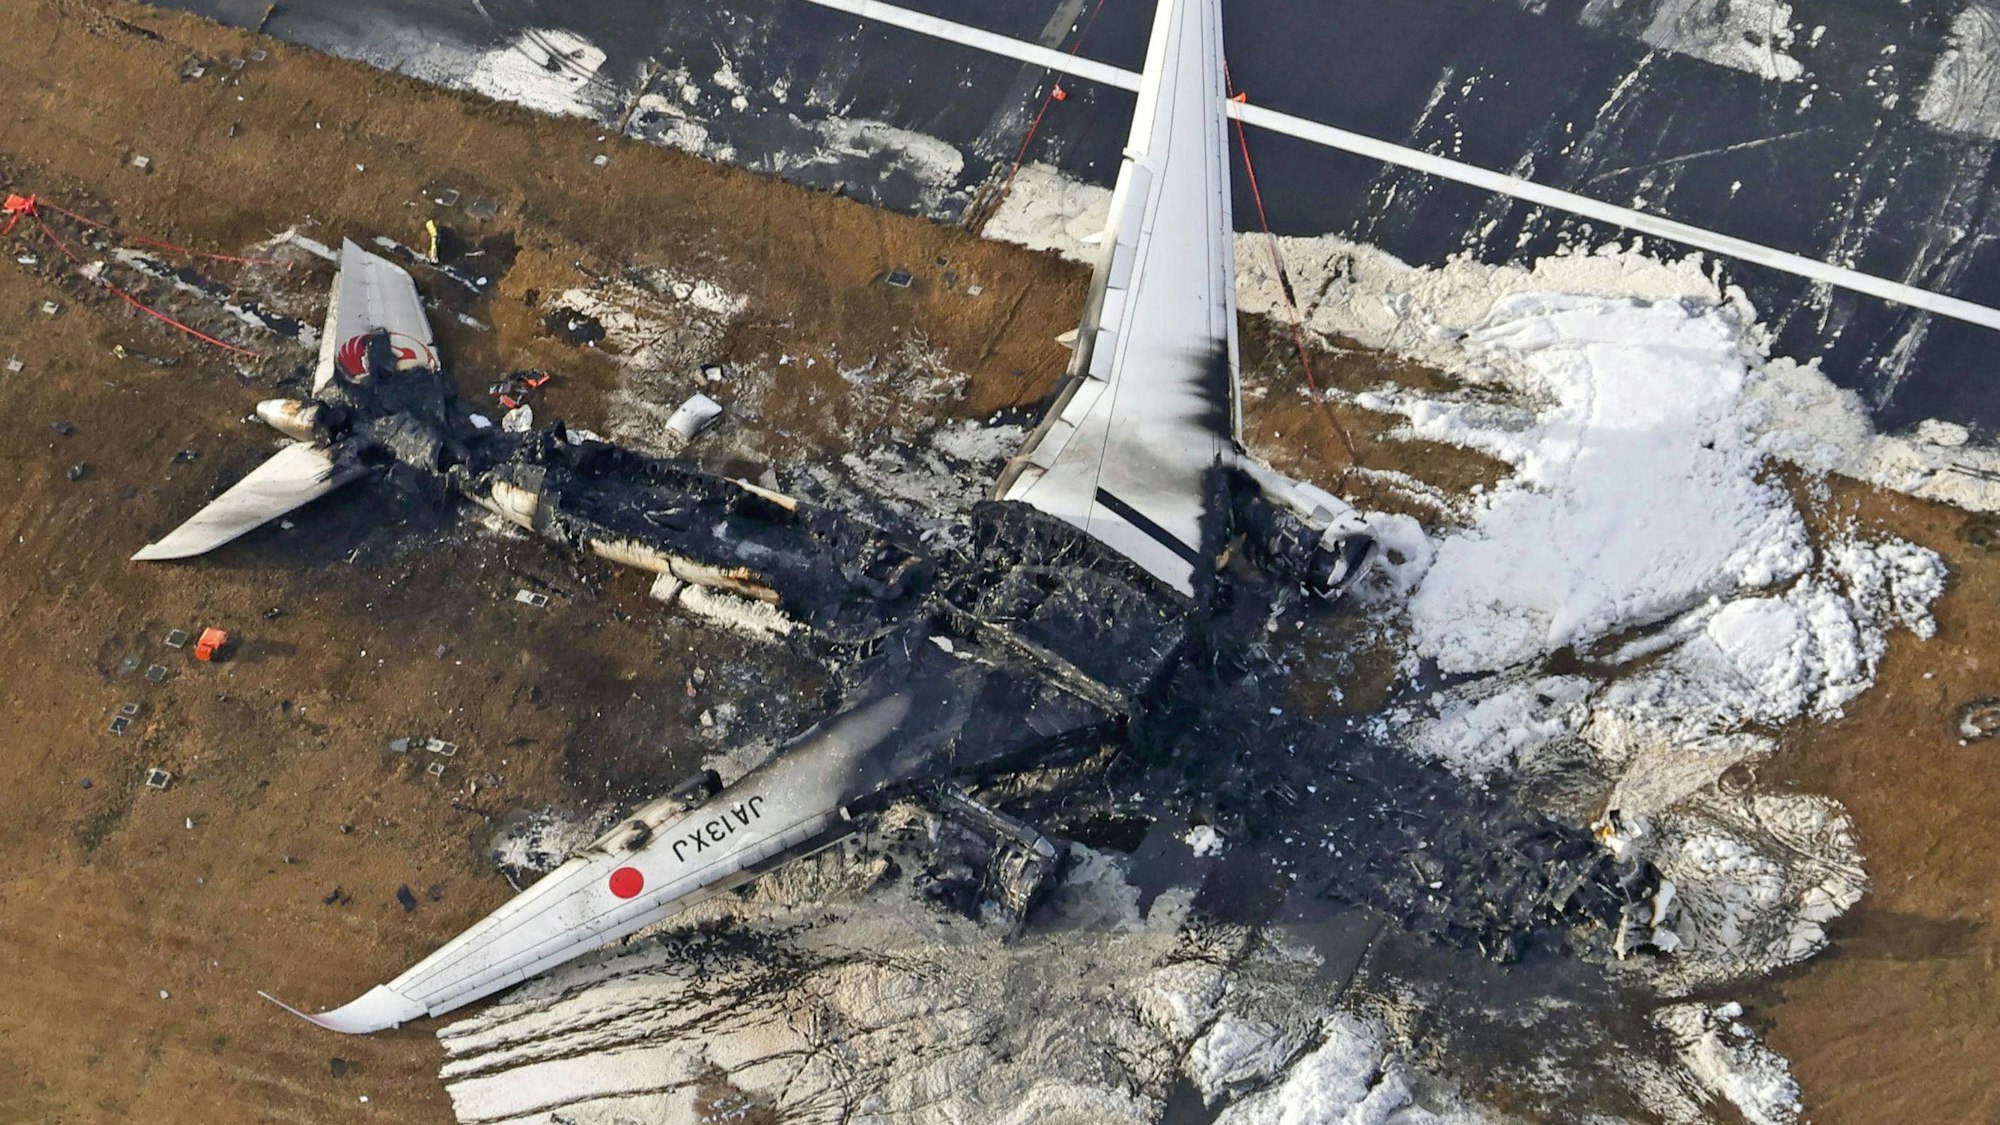 Es ist der erste Airbus A350 in der Geschichte des Flugzeugs, der einen Totalschaden erlitt. Die 379 Insassen konnten allerdings noch rechtzeitig aus dem brennenden Flugzeug evakuiert werden.